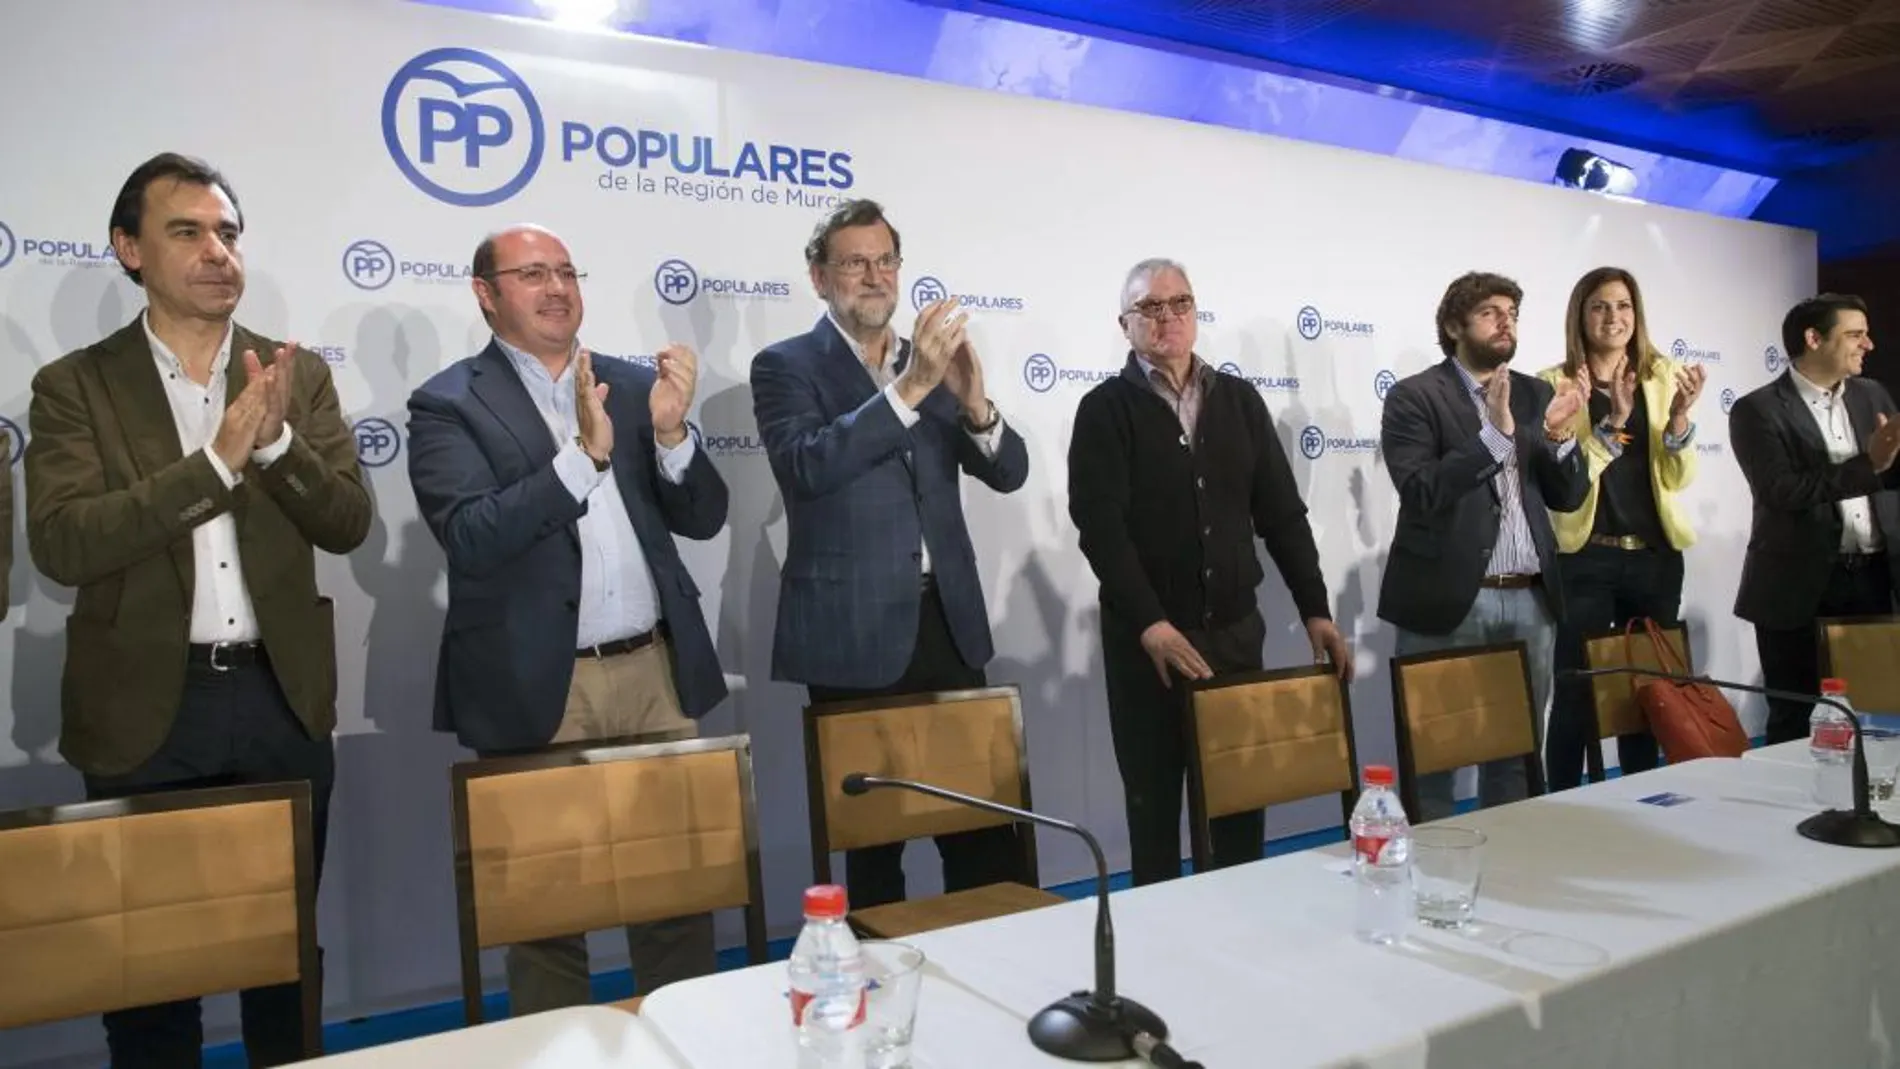 El jefe del Ejecutivo en funciones y líder del PP, Mariano Rajoy, acompañado por el presidente del partido en la region de Murcia, Ramón Luis Valcárcel